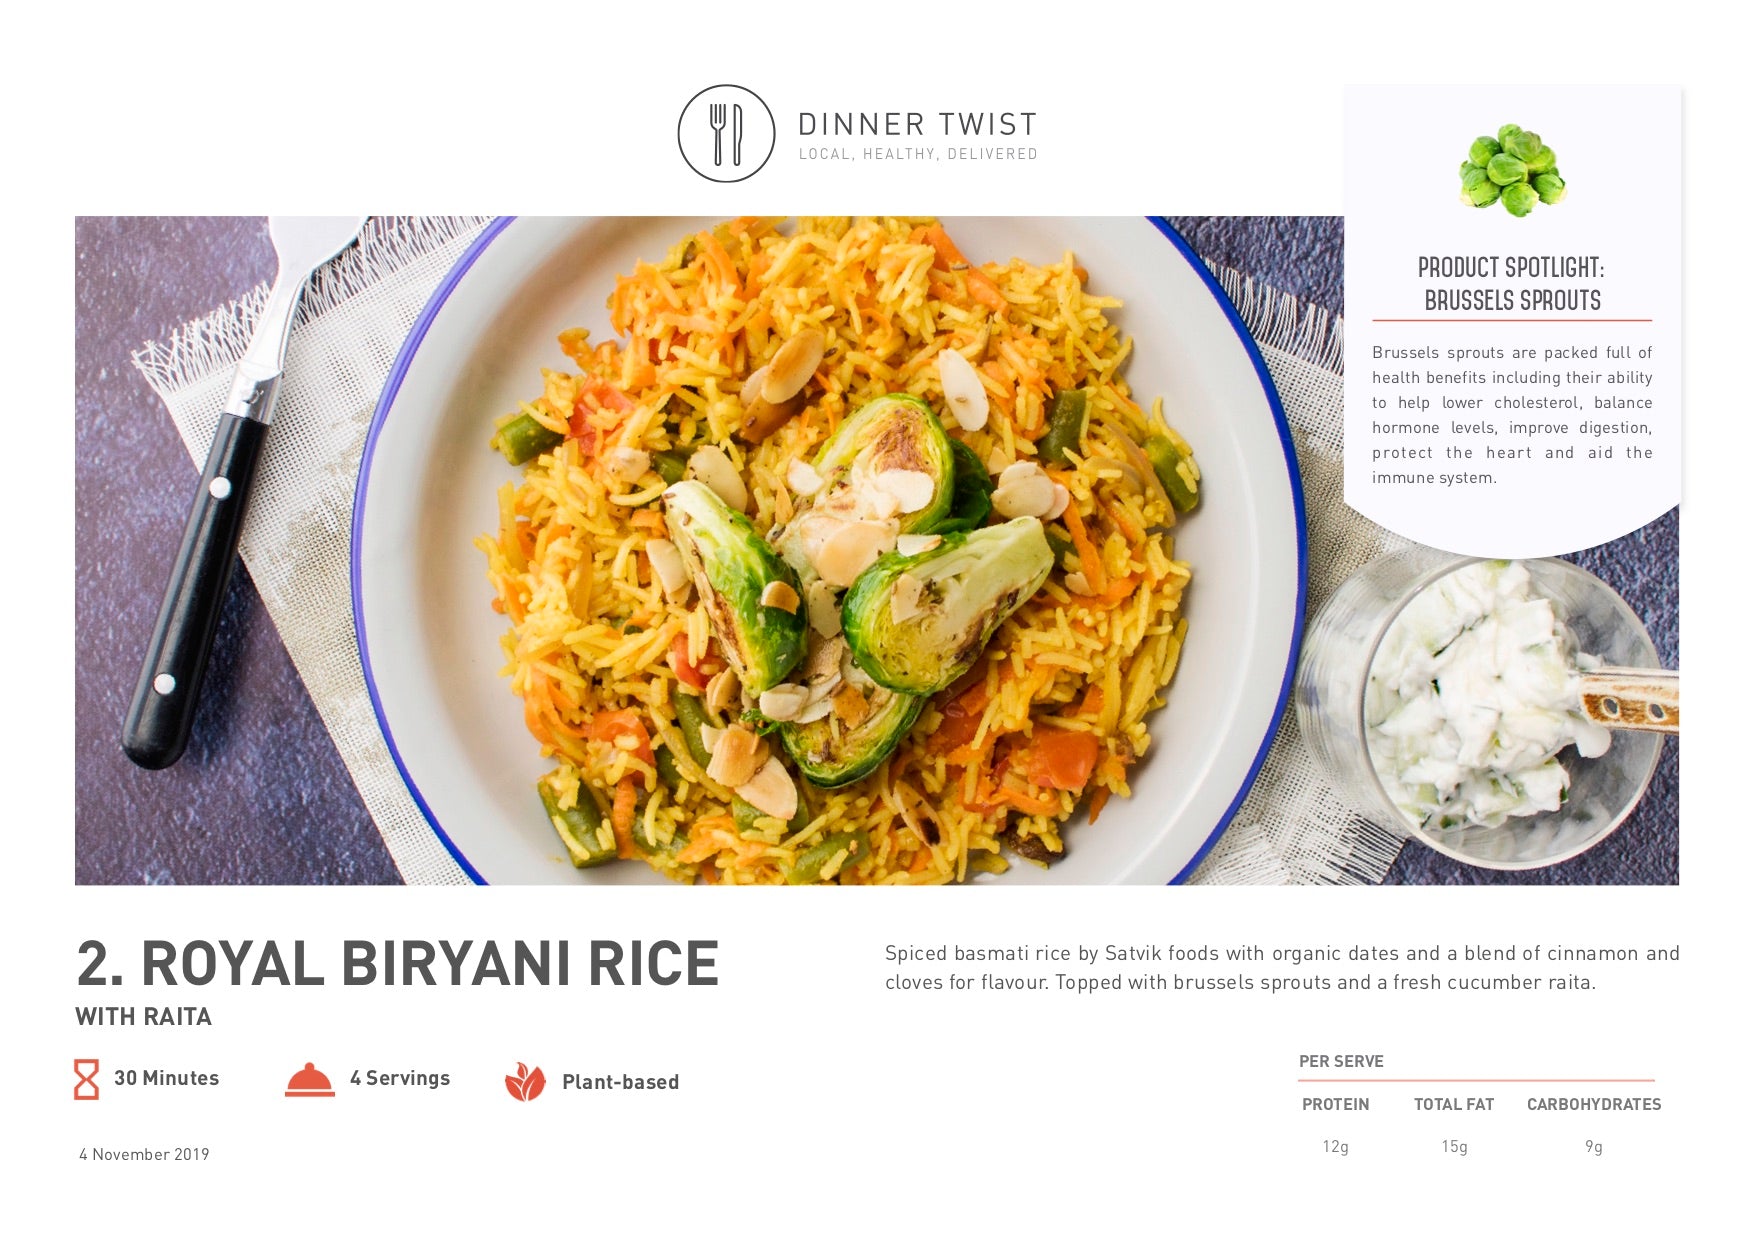 Royal Biryani Rice